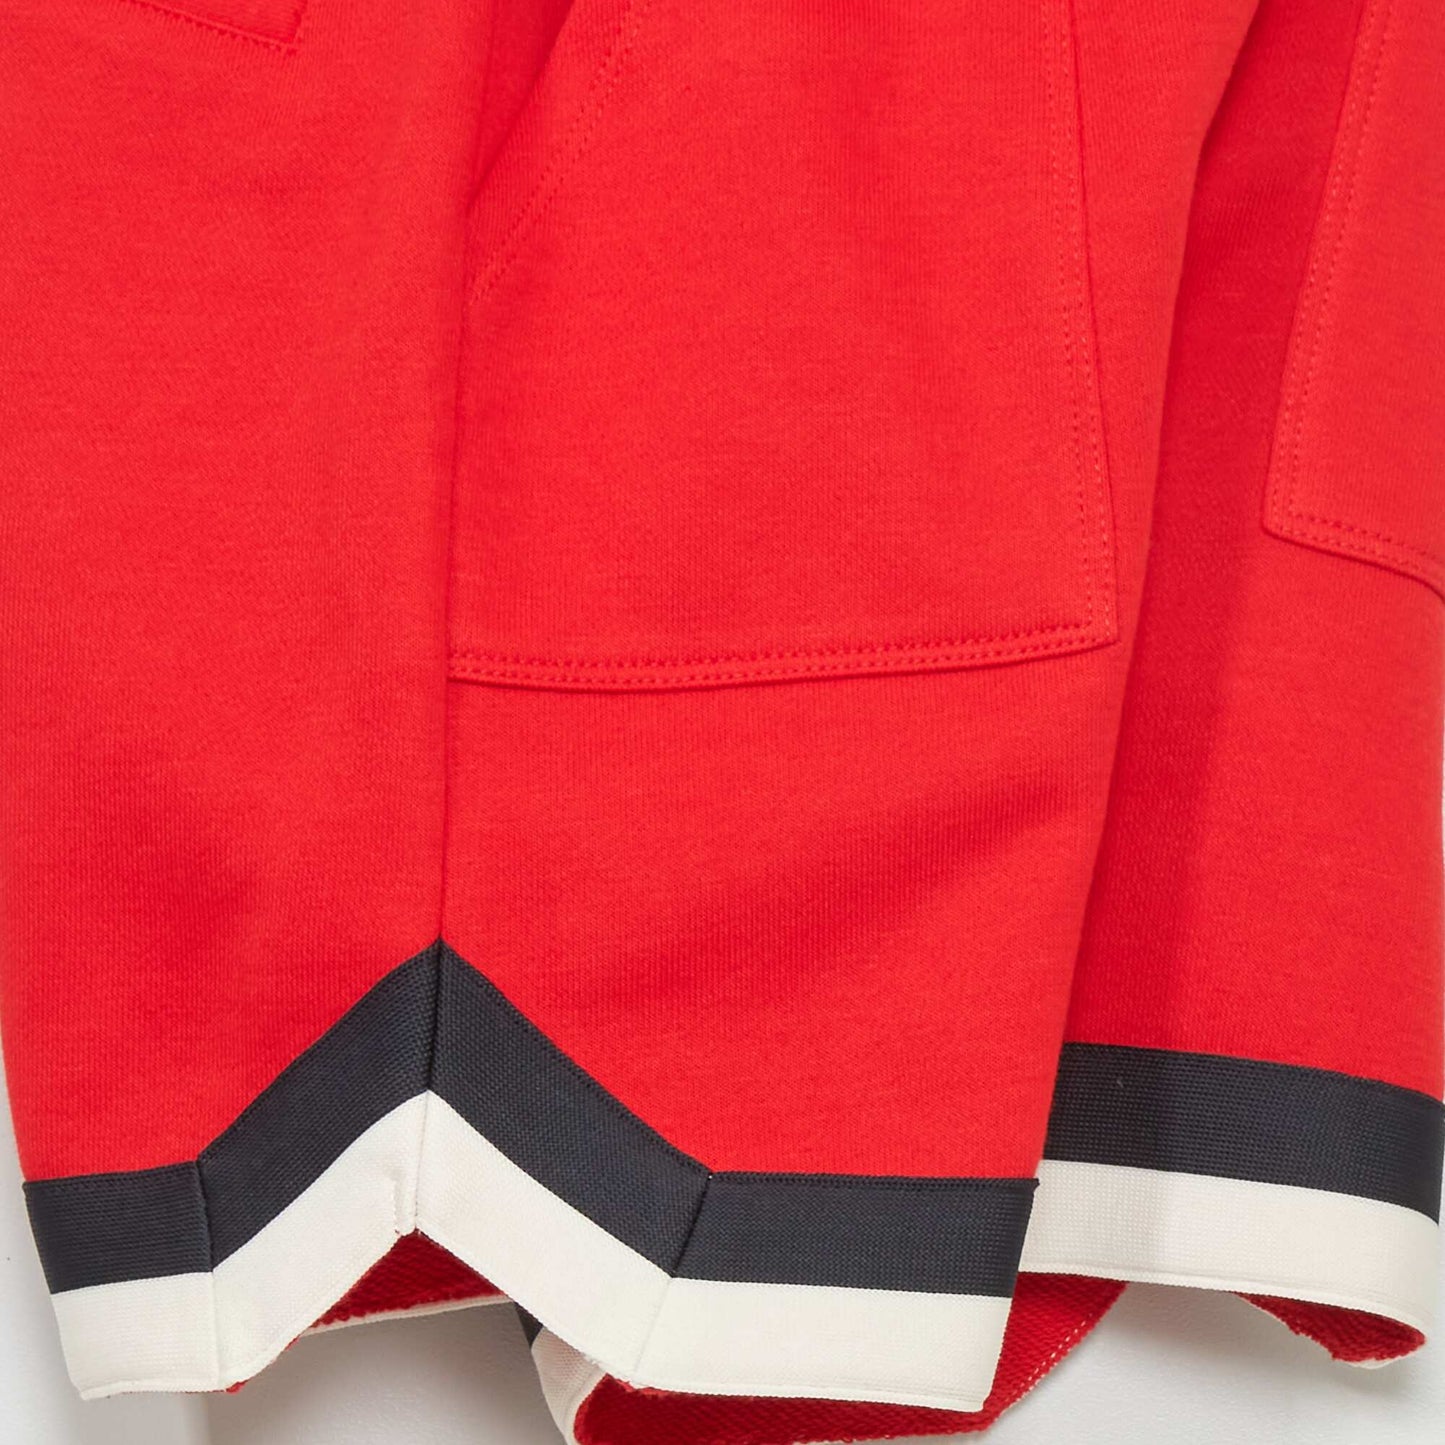 Sweatshirt fabric Bermuda shorts RED